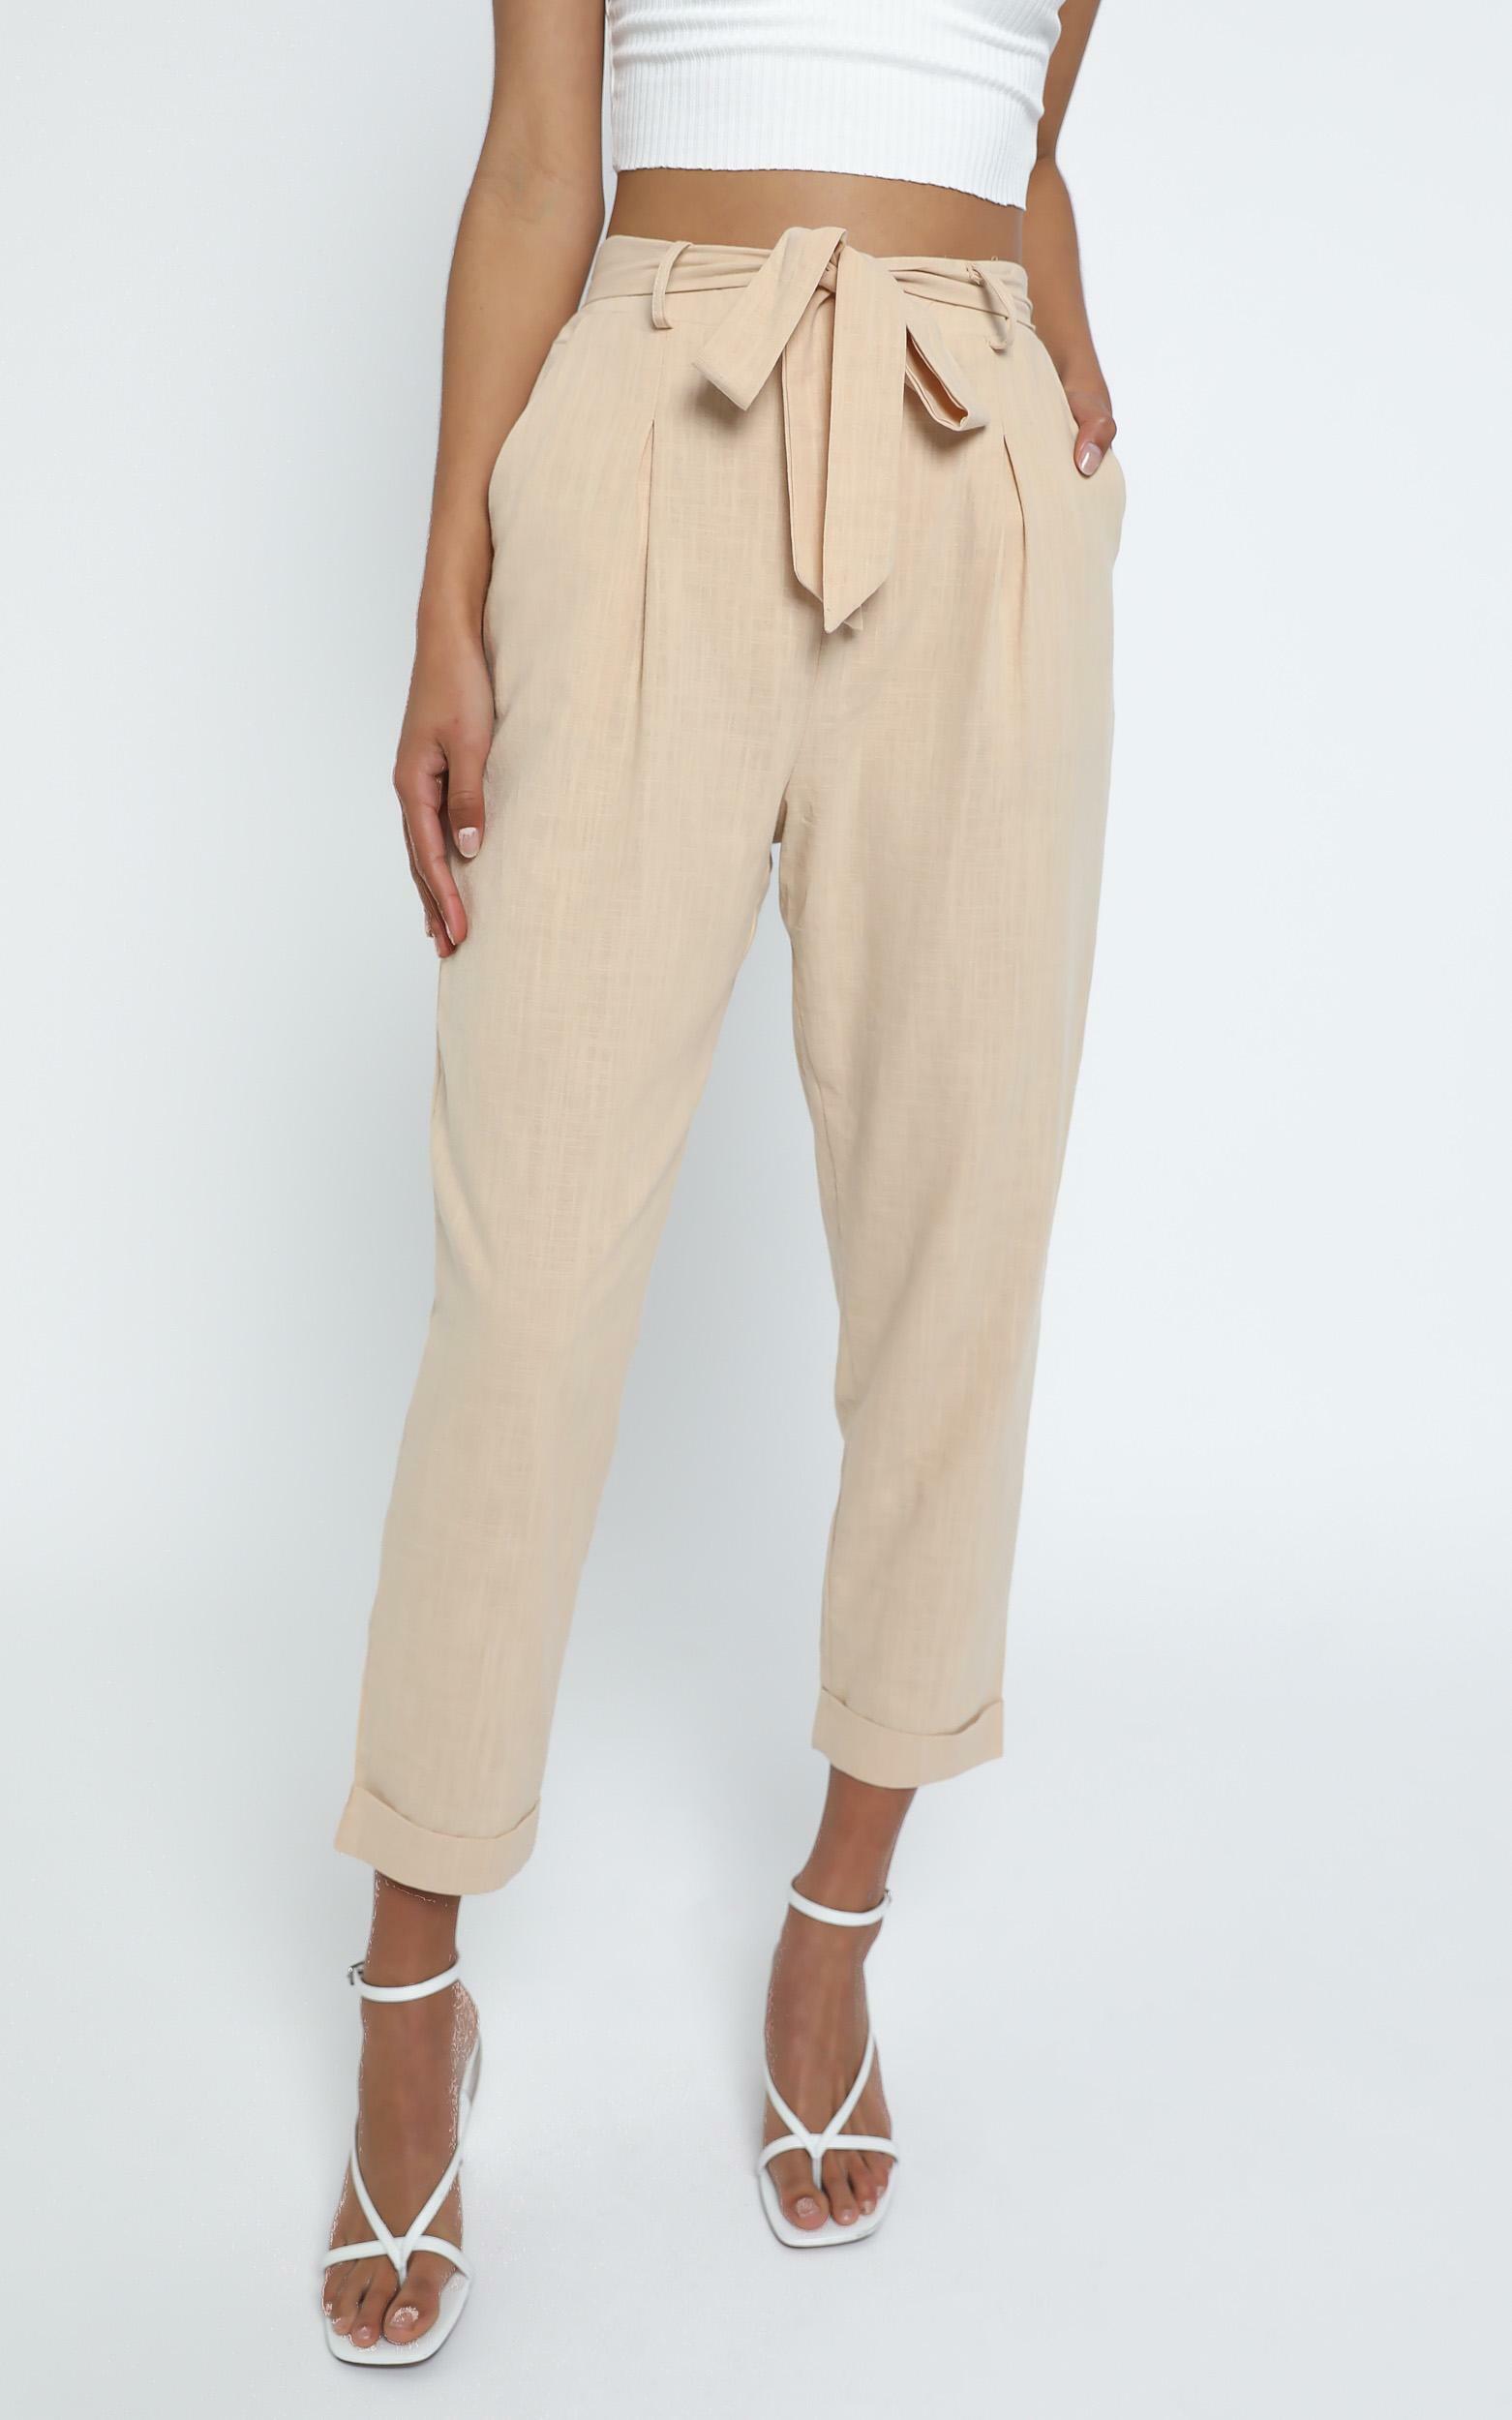 Clover Pants in Beige Linen Look | Showpo USA